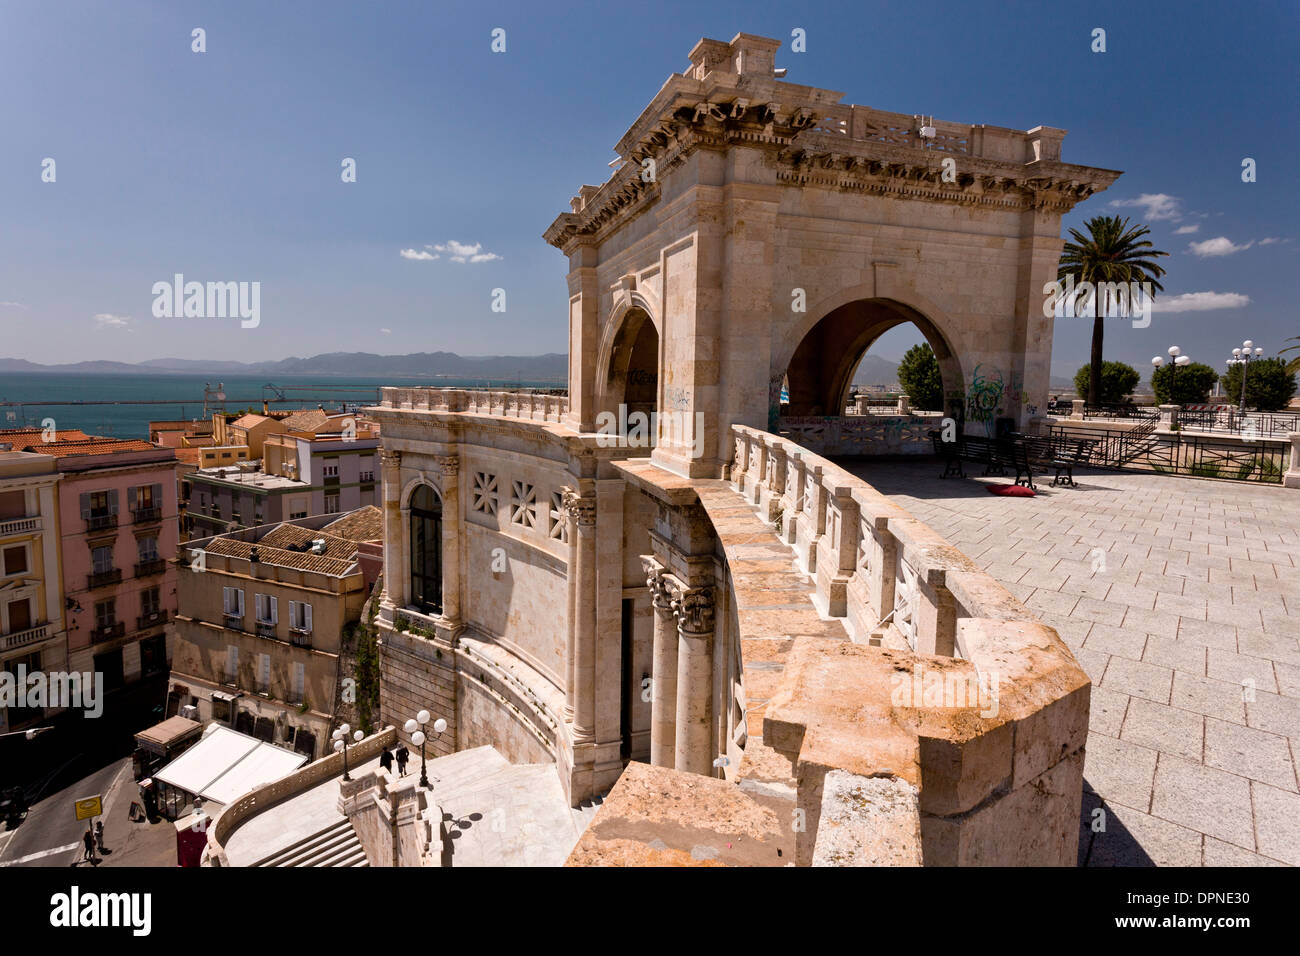 The Bastione San Remy, in Cagliari, Sardinia, Italy. Stock Photo